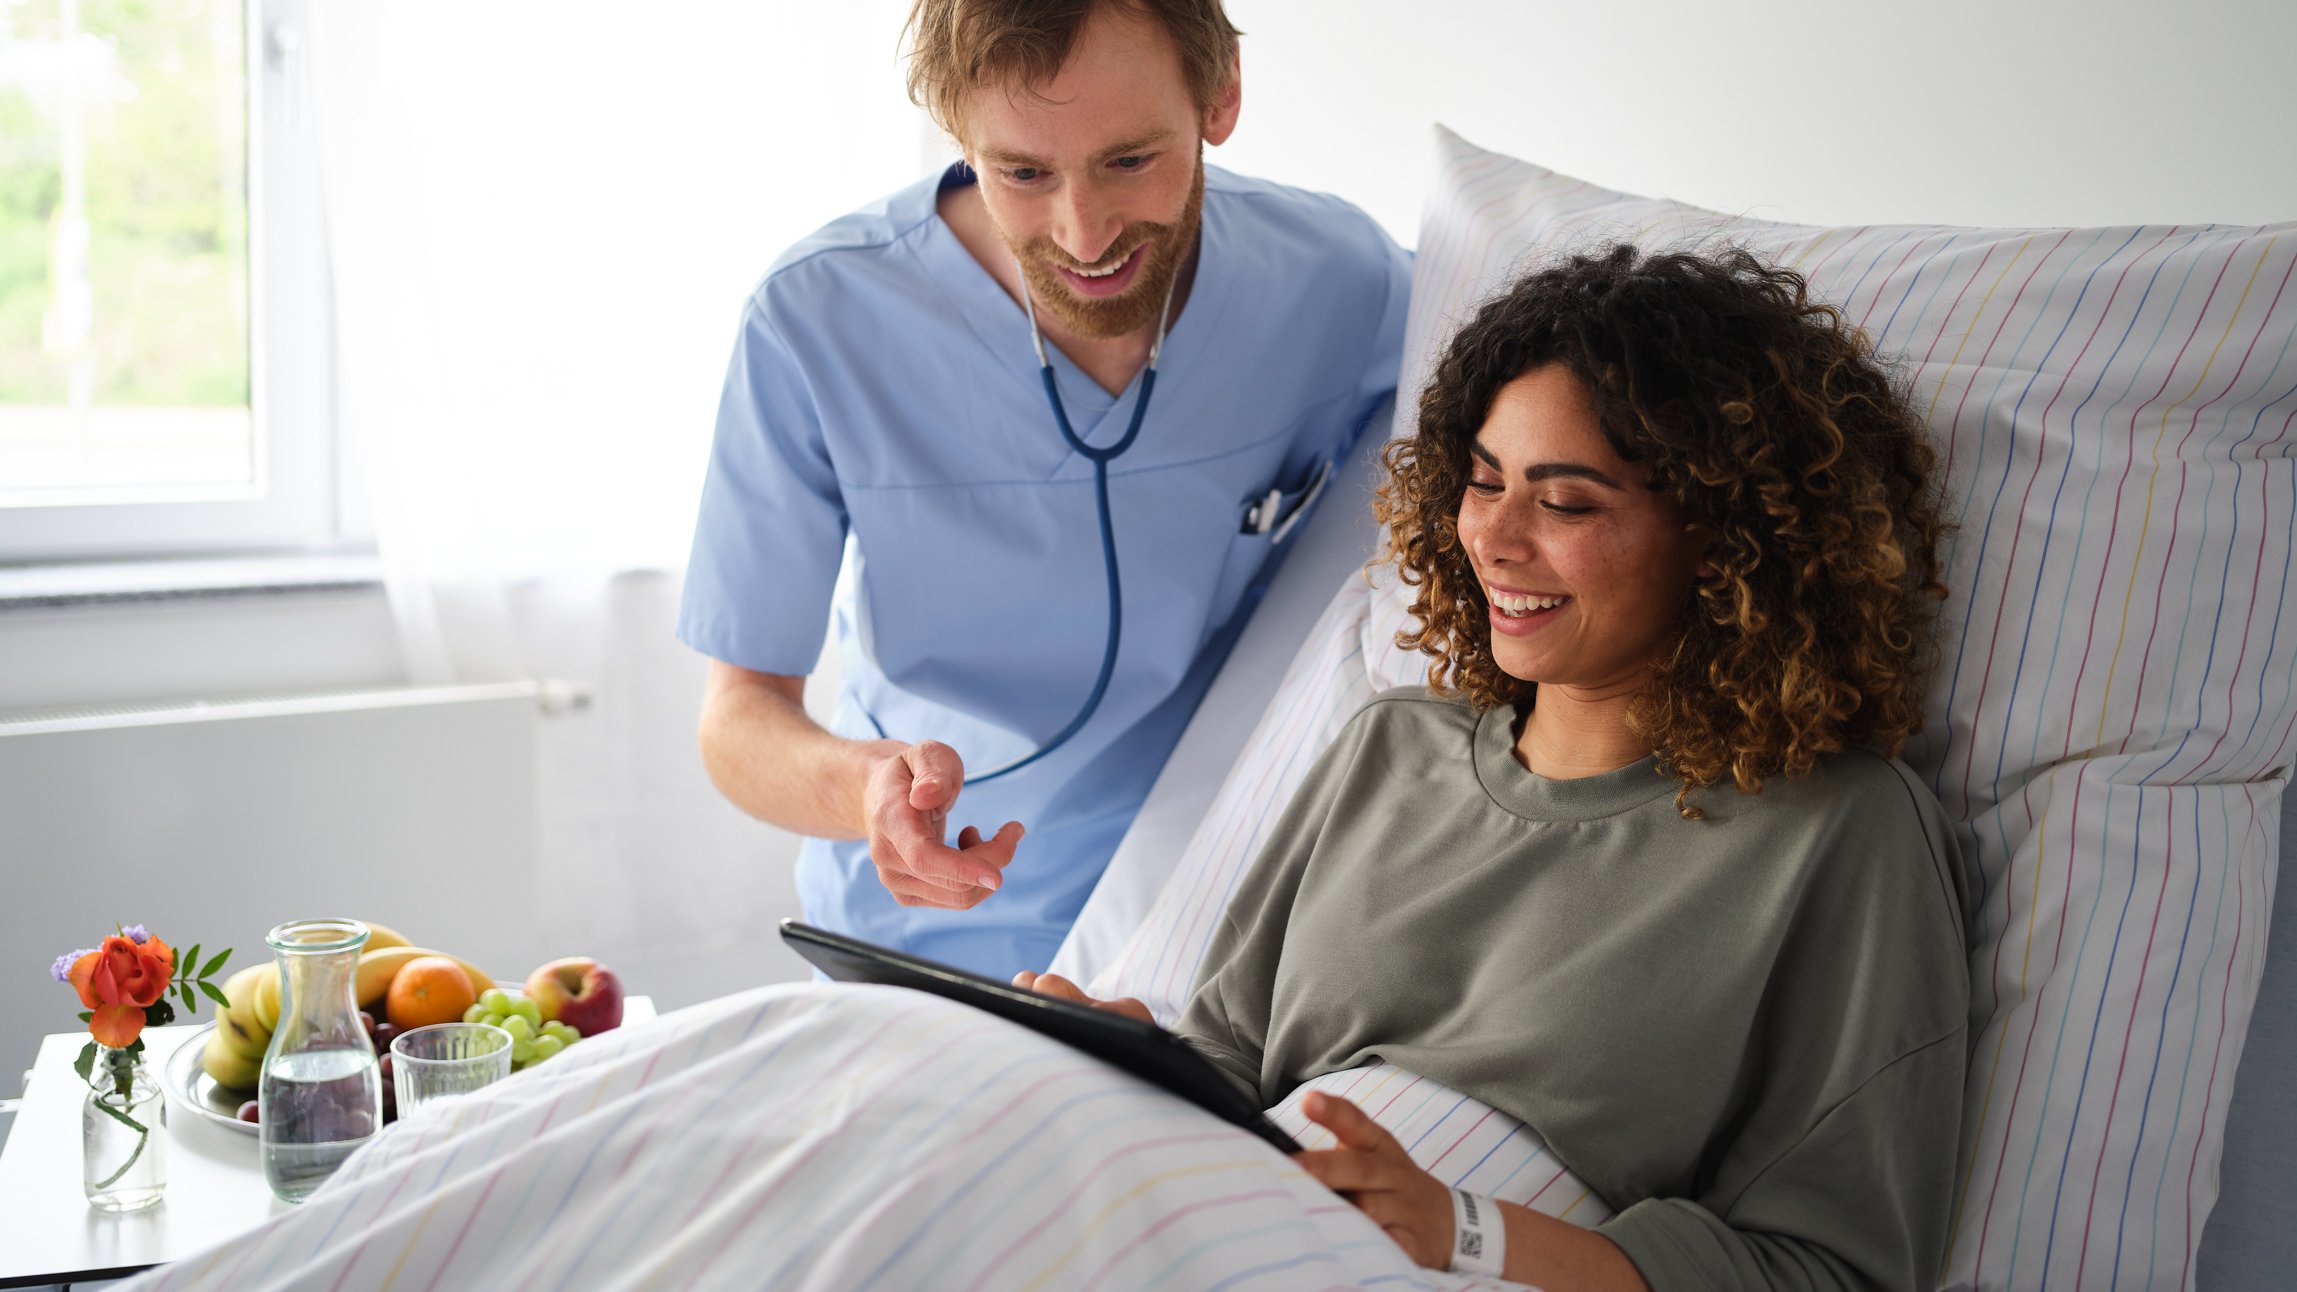 Patient Engagement | Pfleger zeigt Patientin im Krankenhausbett, wie sie auf dem iPad eine Patientenumfrage ausfüllt